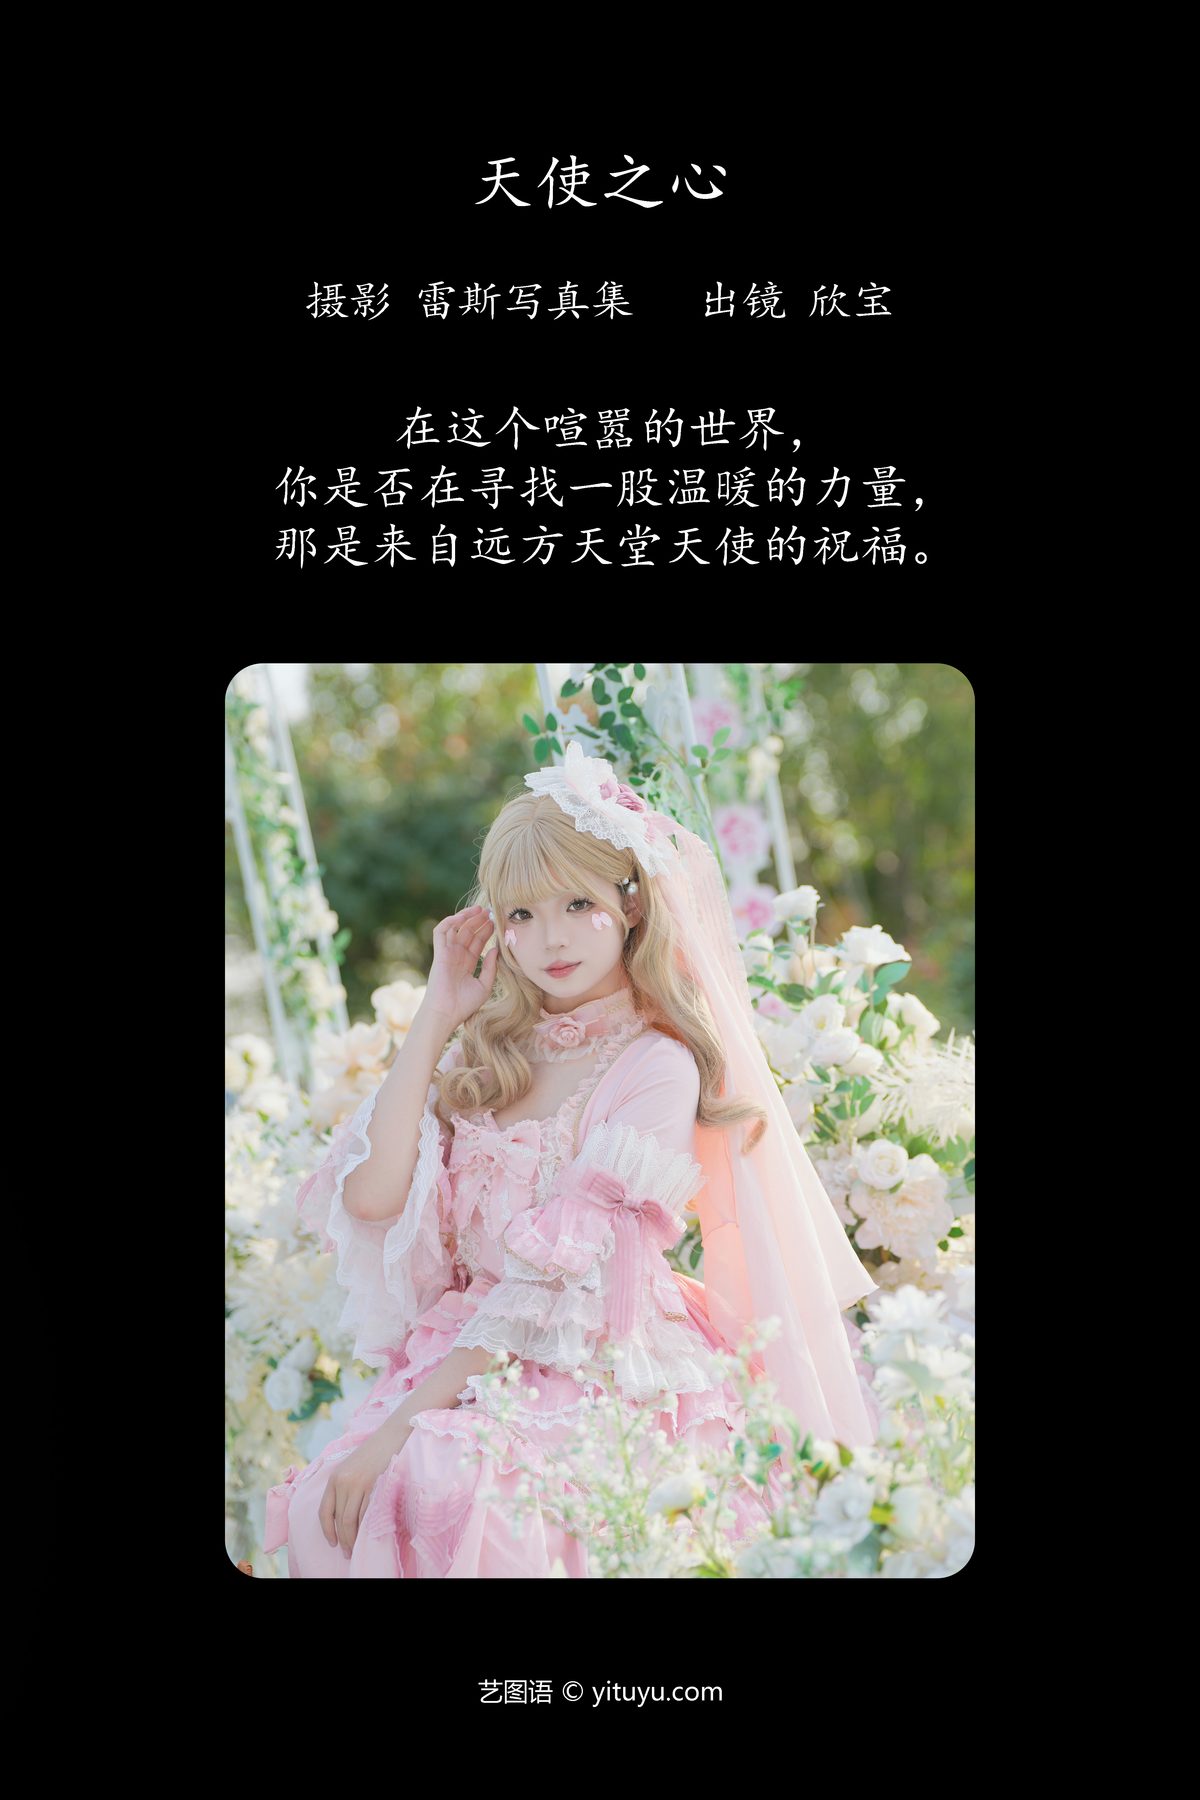 YiTuYu艺图语 Vol 4943 Xin Bao Xin Bao Tian Tian Chi Bao 0002 4607455524.jpg